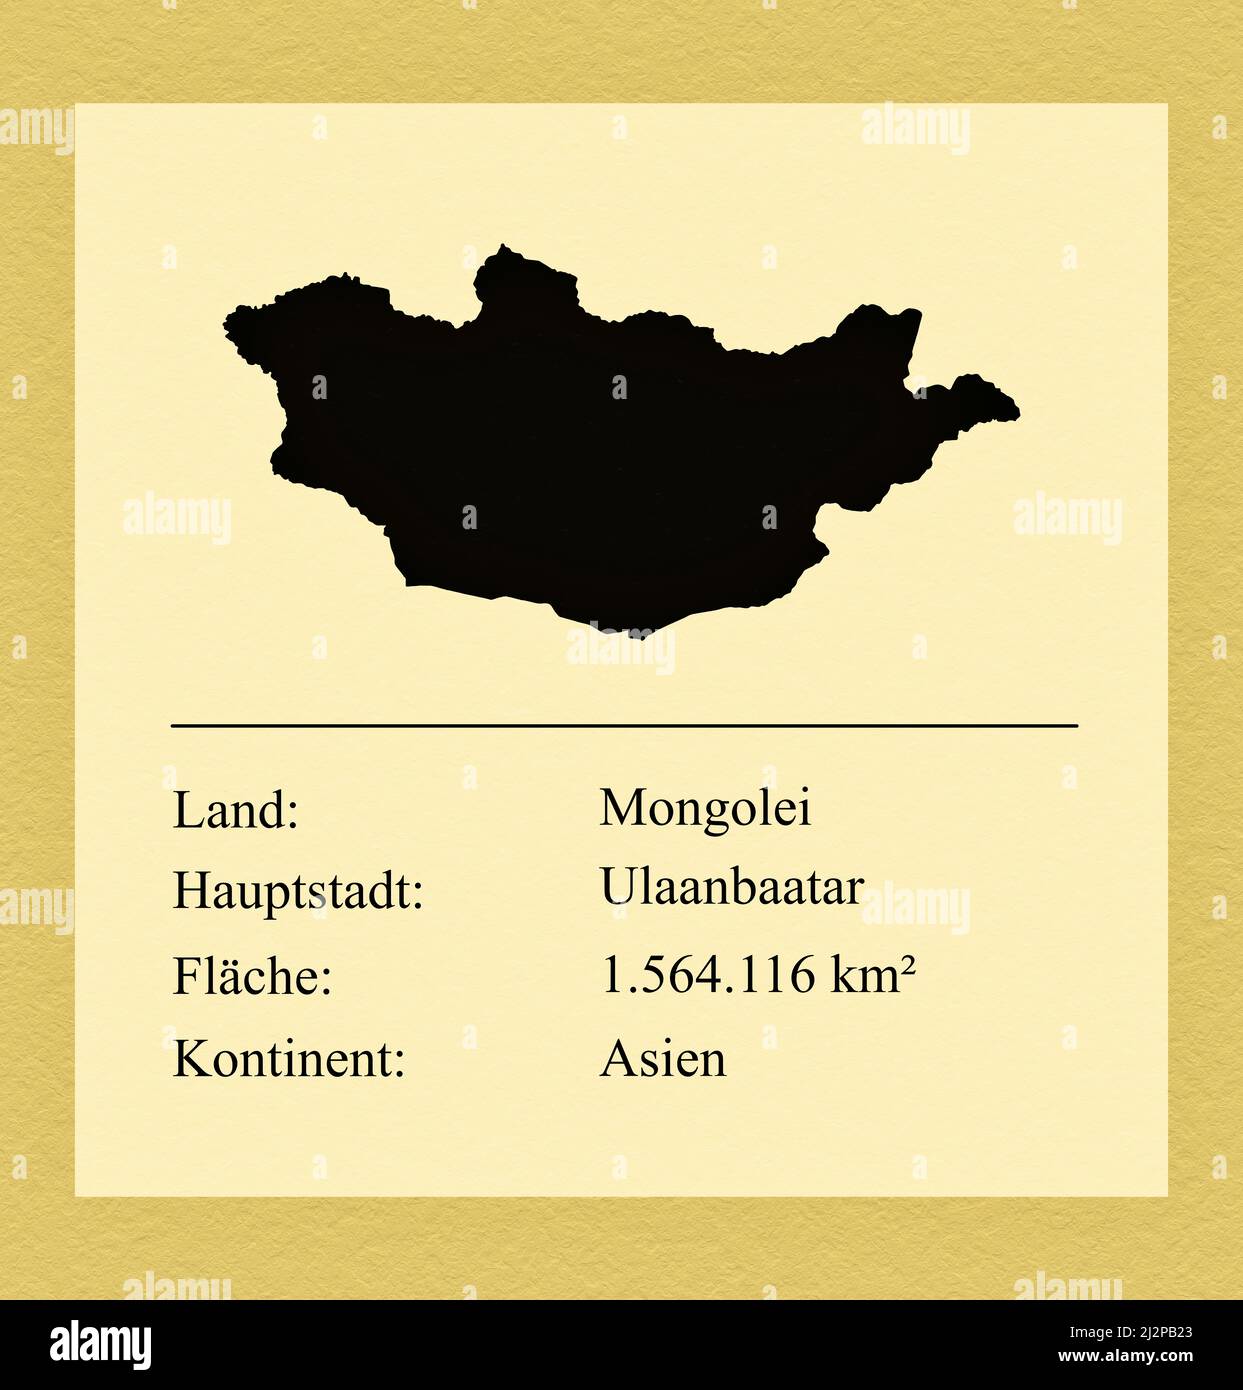 Umrisse des Landes Mongolei, darunter ein kleiner Steckbrief mit Ländernamen, Hauptstadt, Fläche und Kontinent Stock Photo